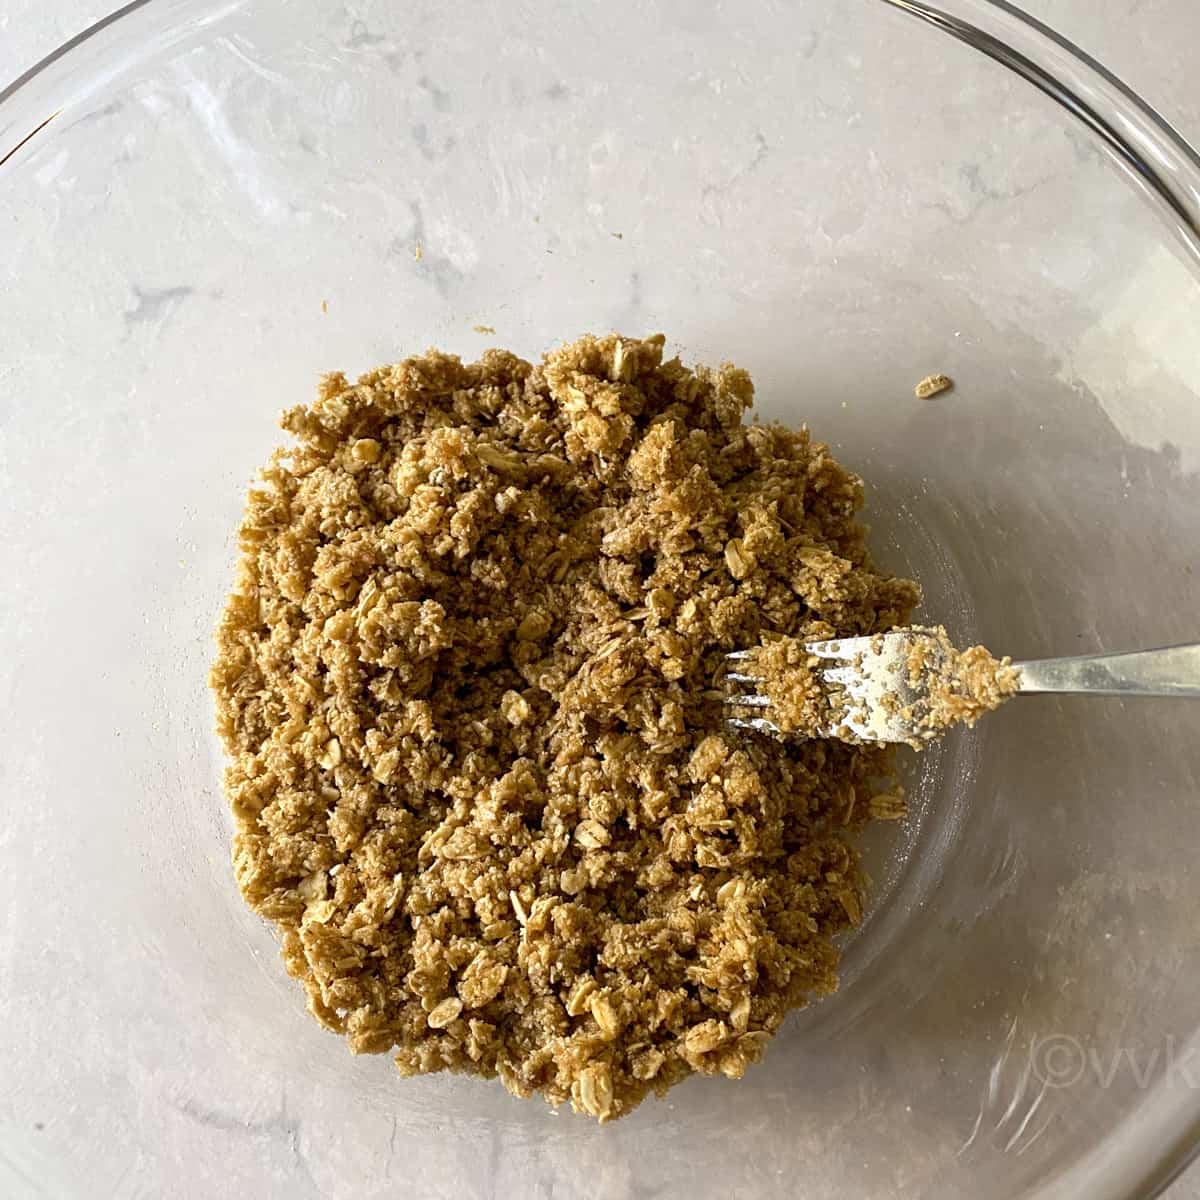 crumb mixture using oat flour